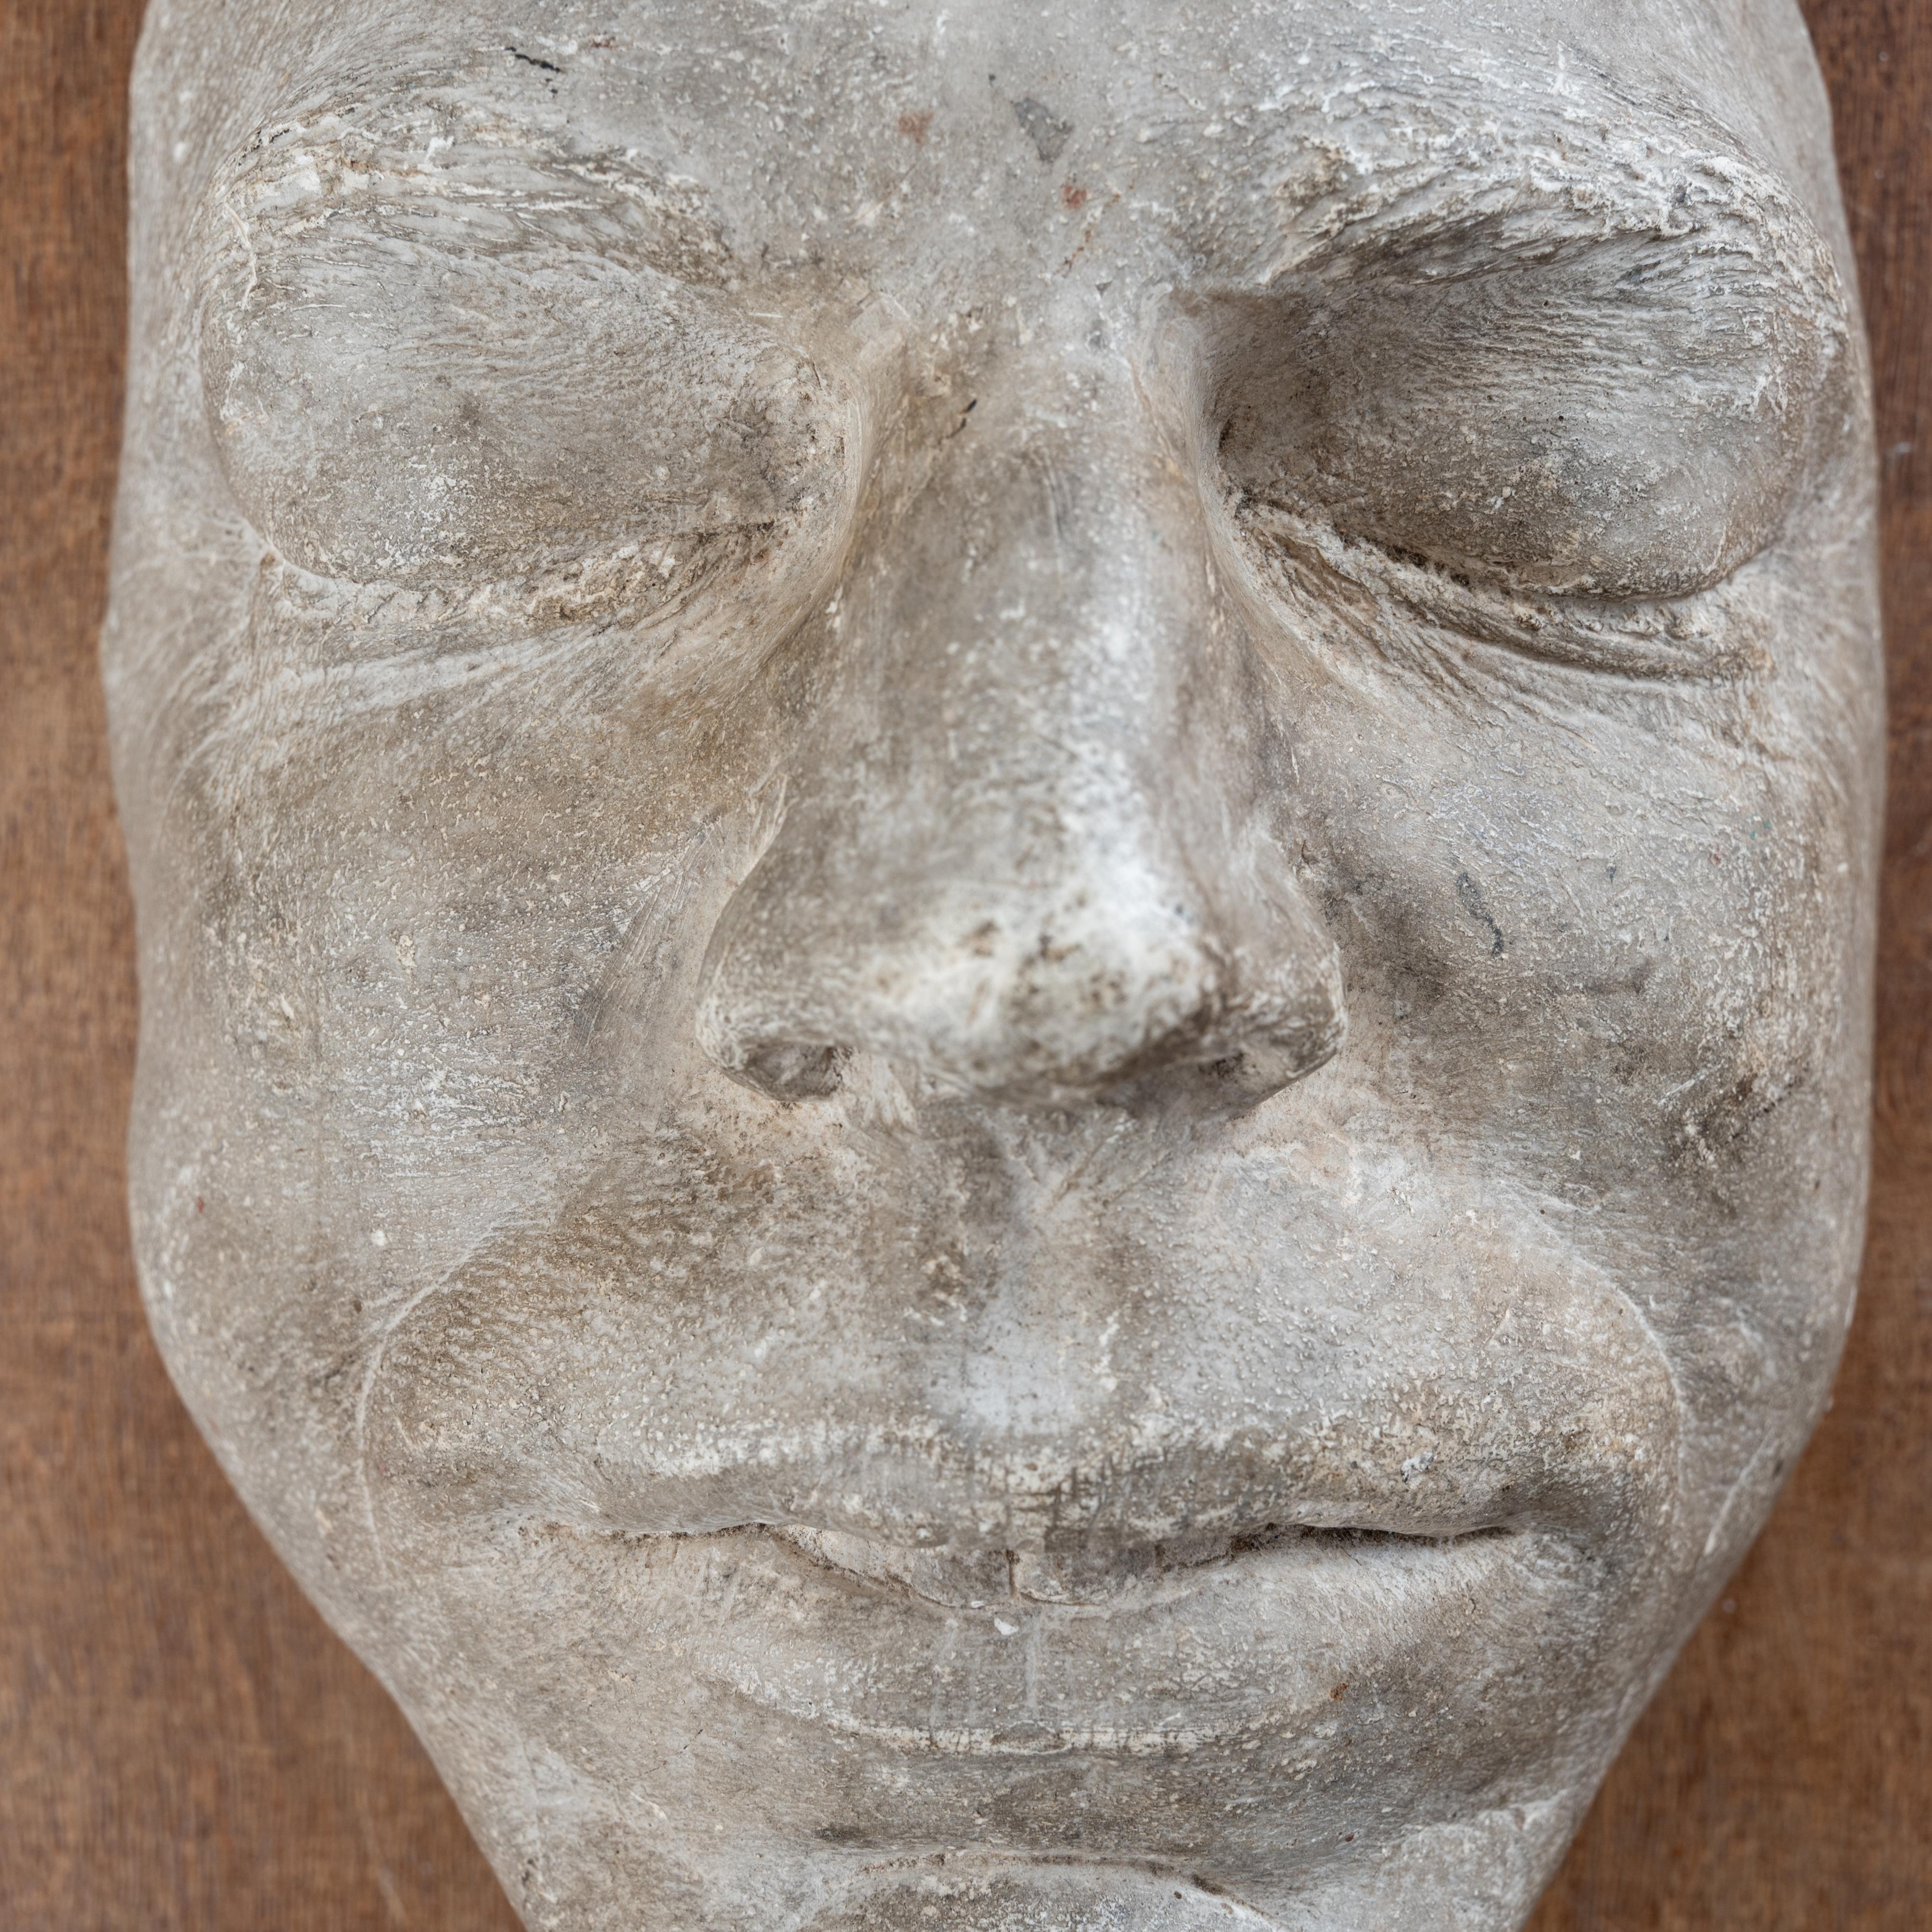 Plaster Death Mask